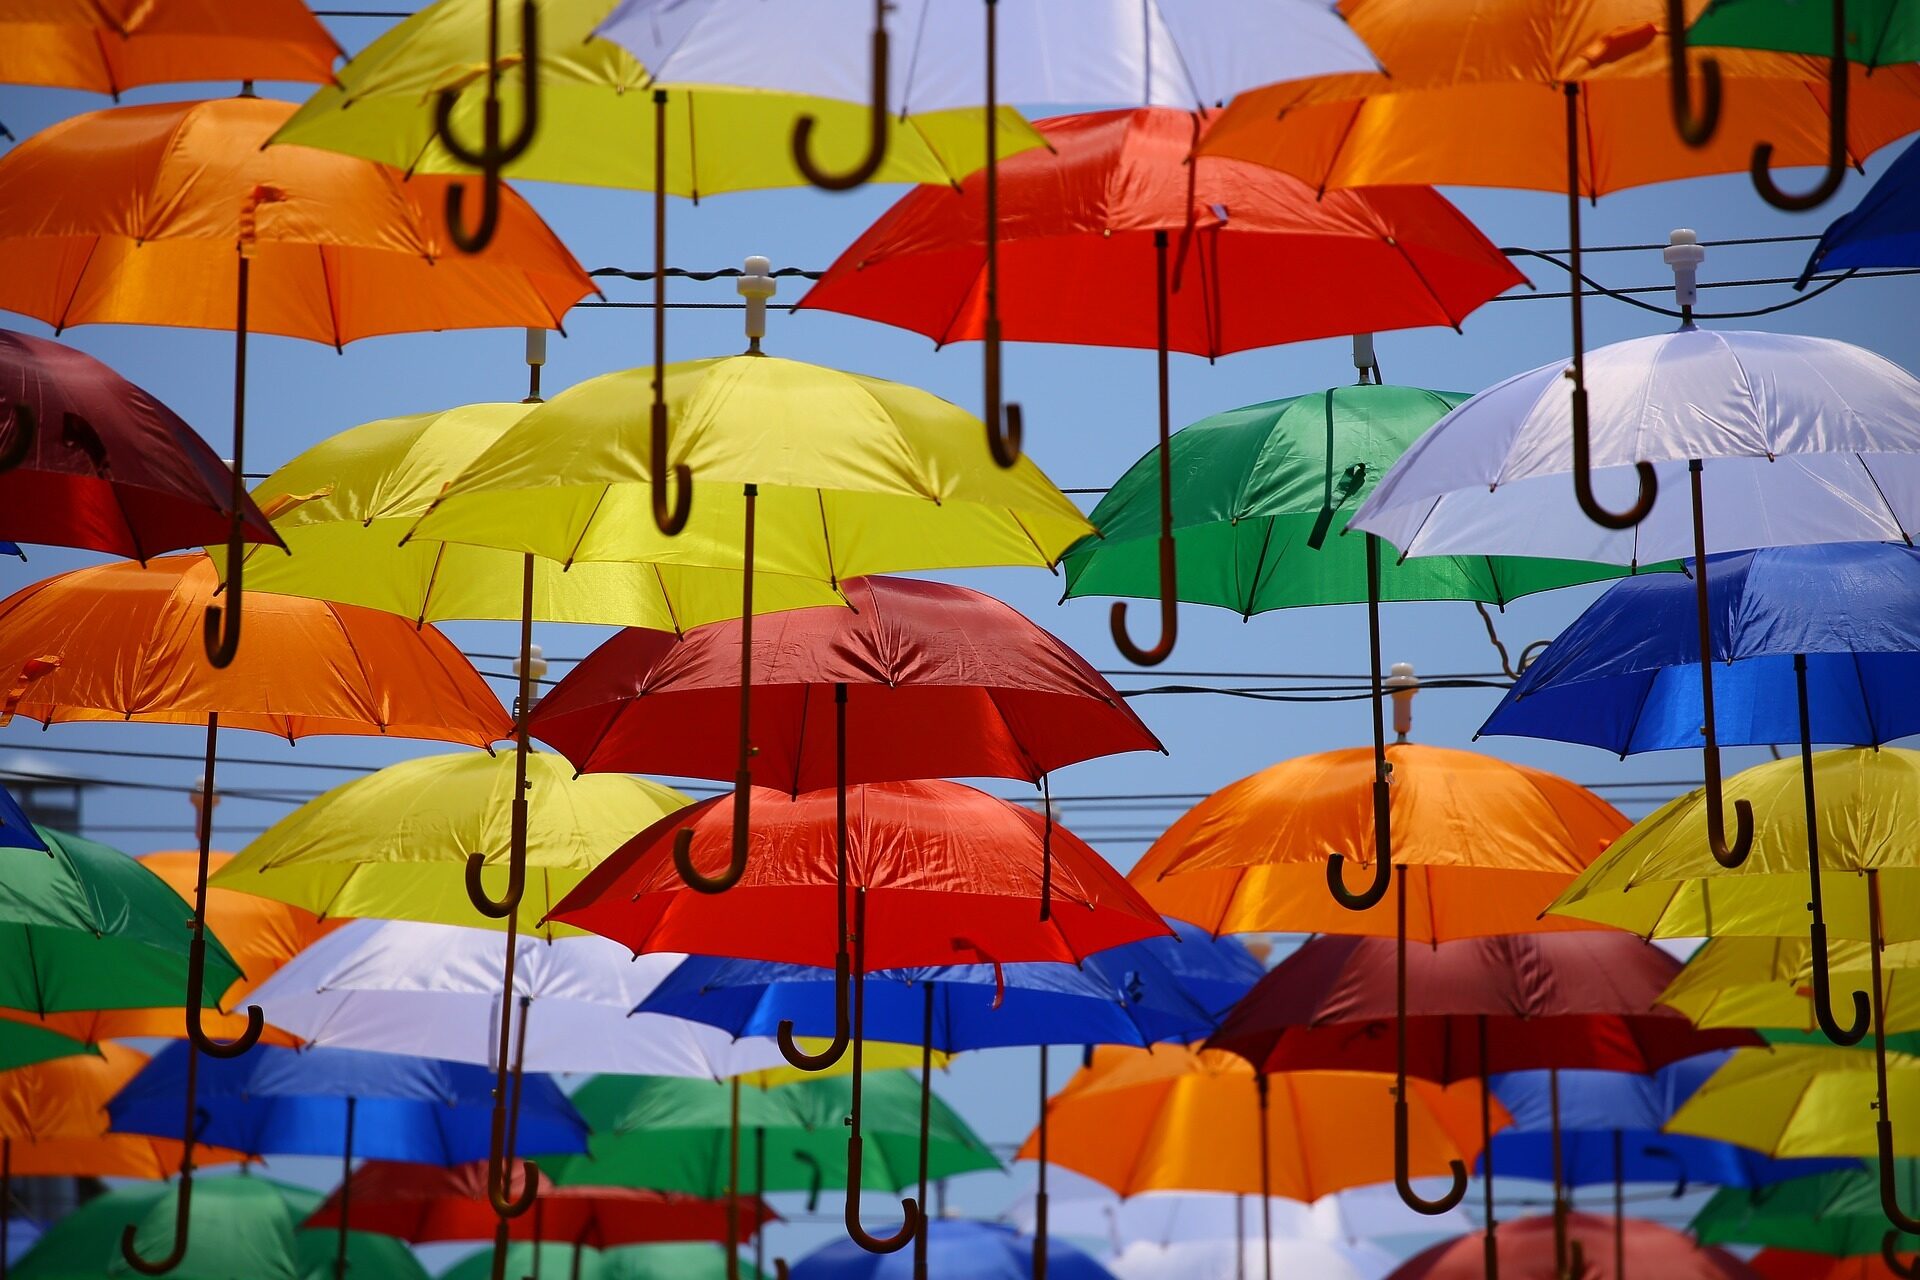 Viele bunte aufgespannte Regenschirme, die am Himmel schweben